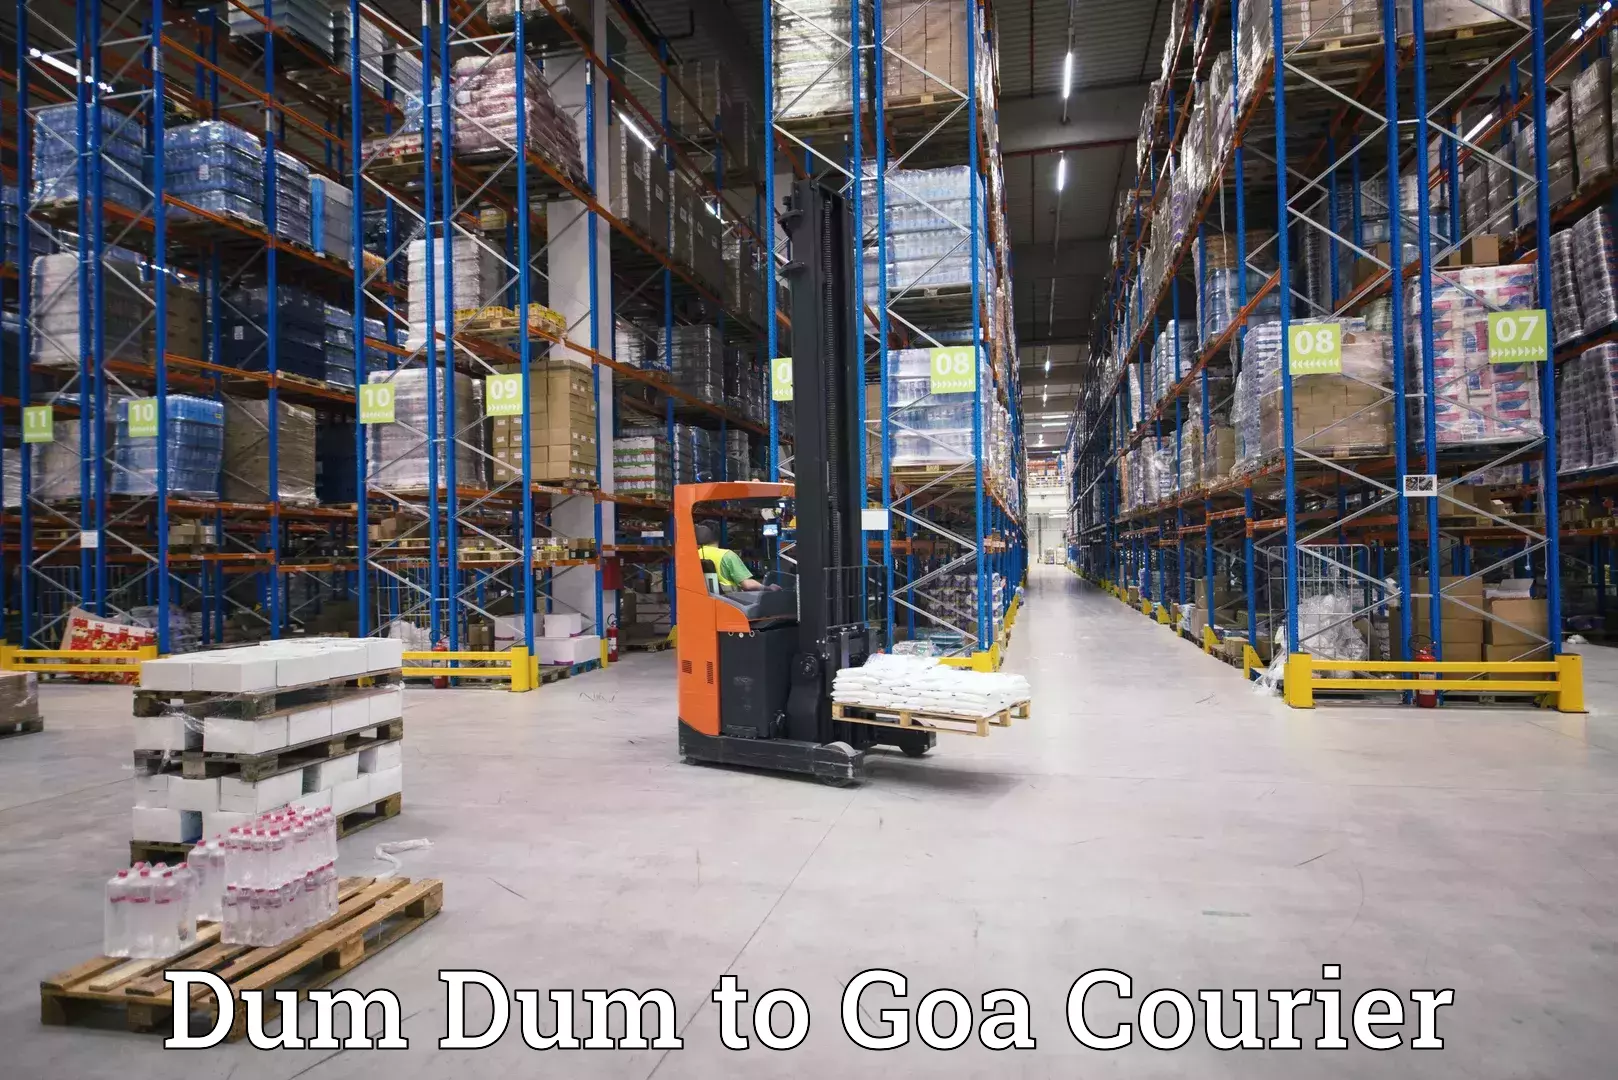 Customer-oriented courier services Dum Dum to Vasco da Gama